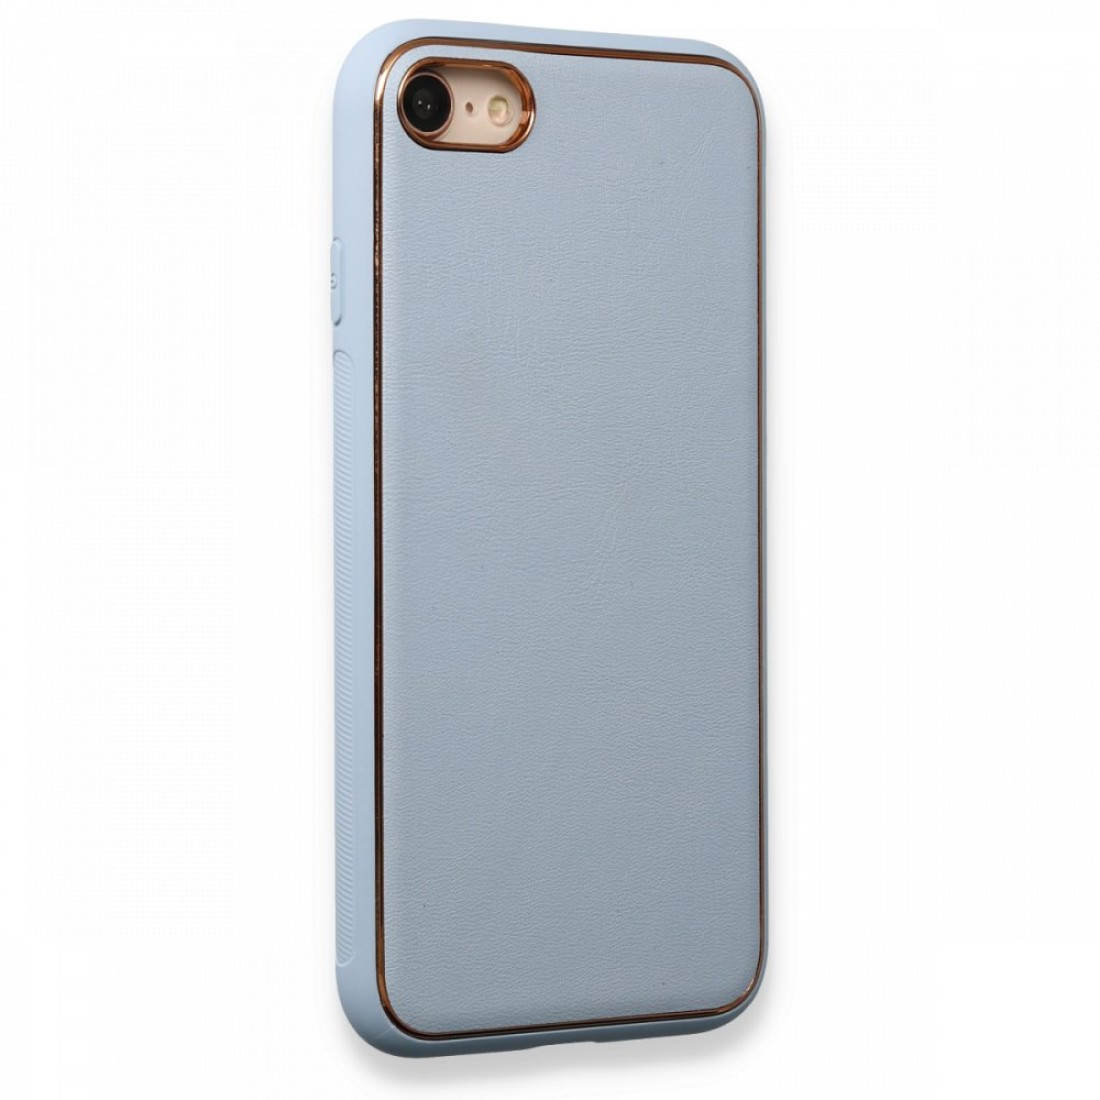 Apple iPhone 8 Kılıf Coco Deri Silikon Kapak - Açık Mavi